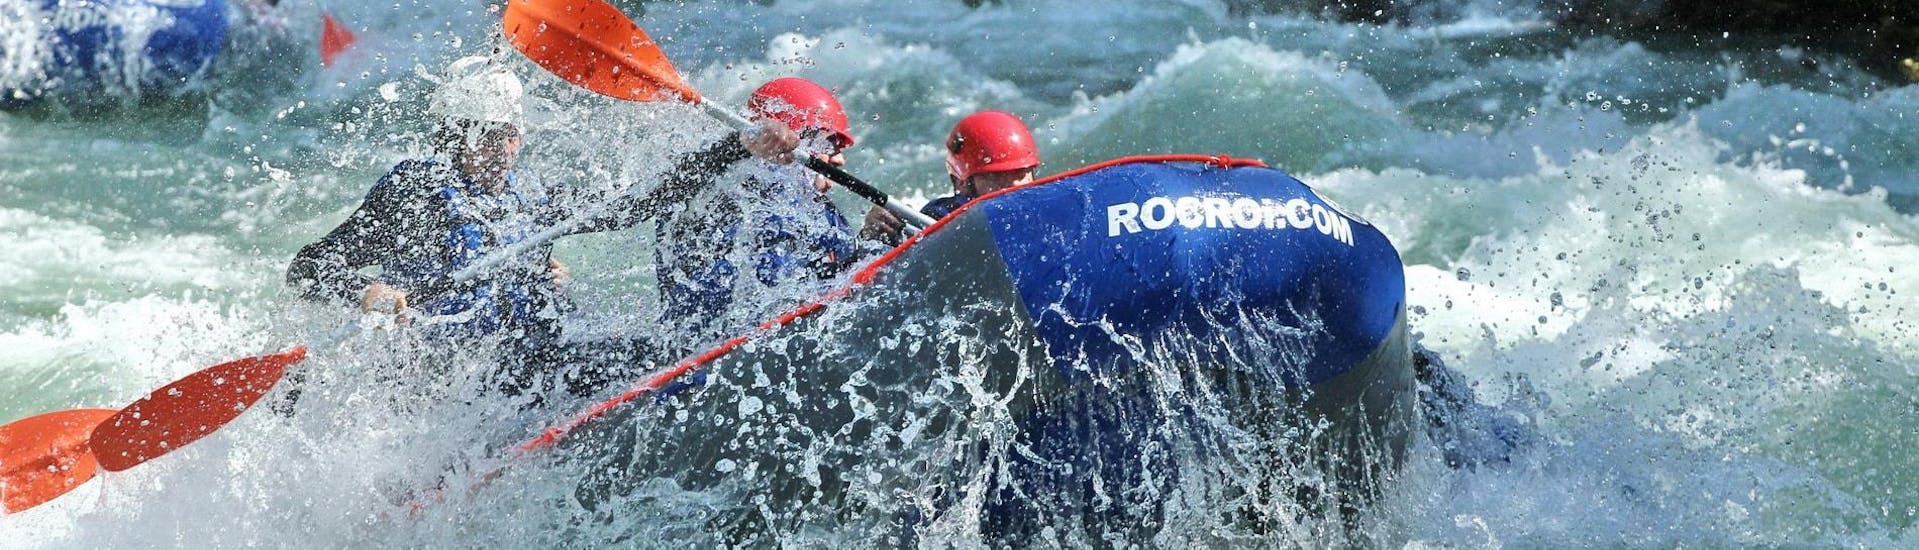 rafting-day-trip-noguera-pallaresa-rocroi-hero